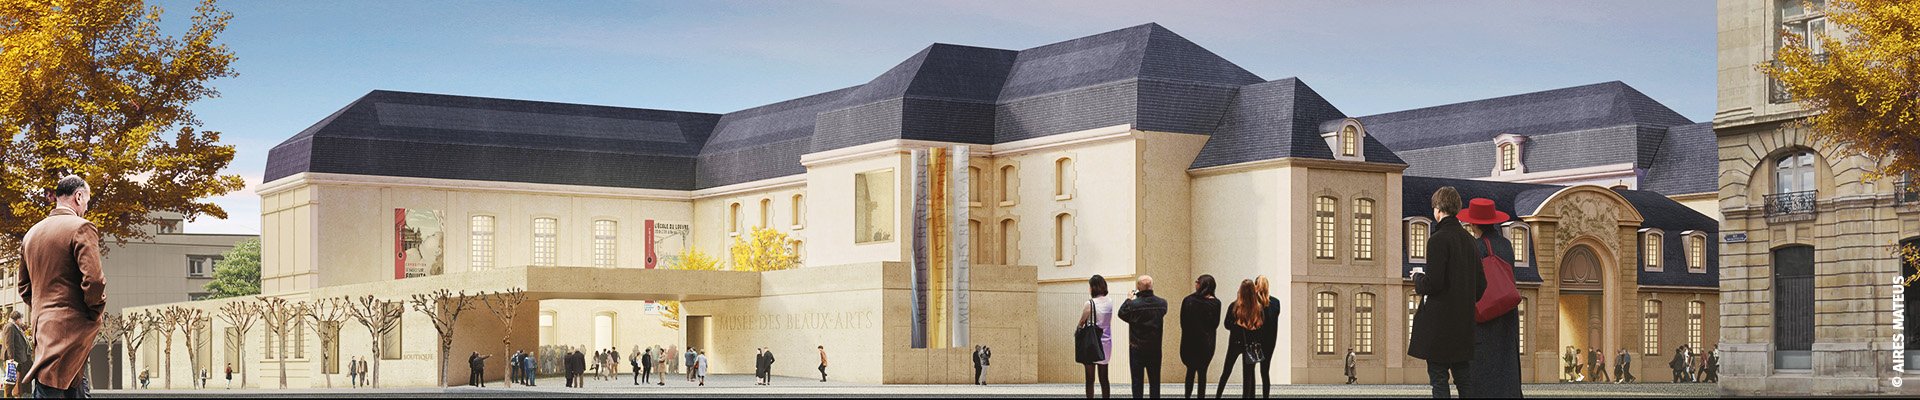 Guide Partez en France : le nouveau musée des Beaux-Arts de Reims débute ses travaux